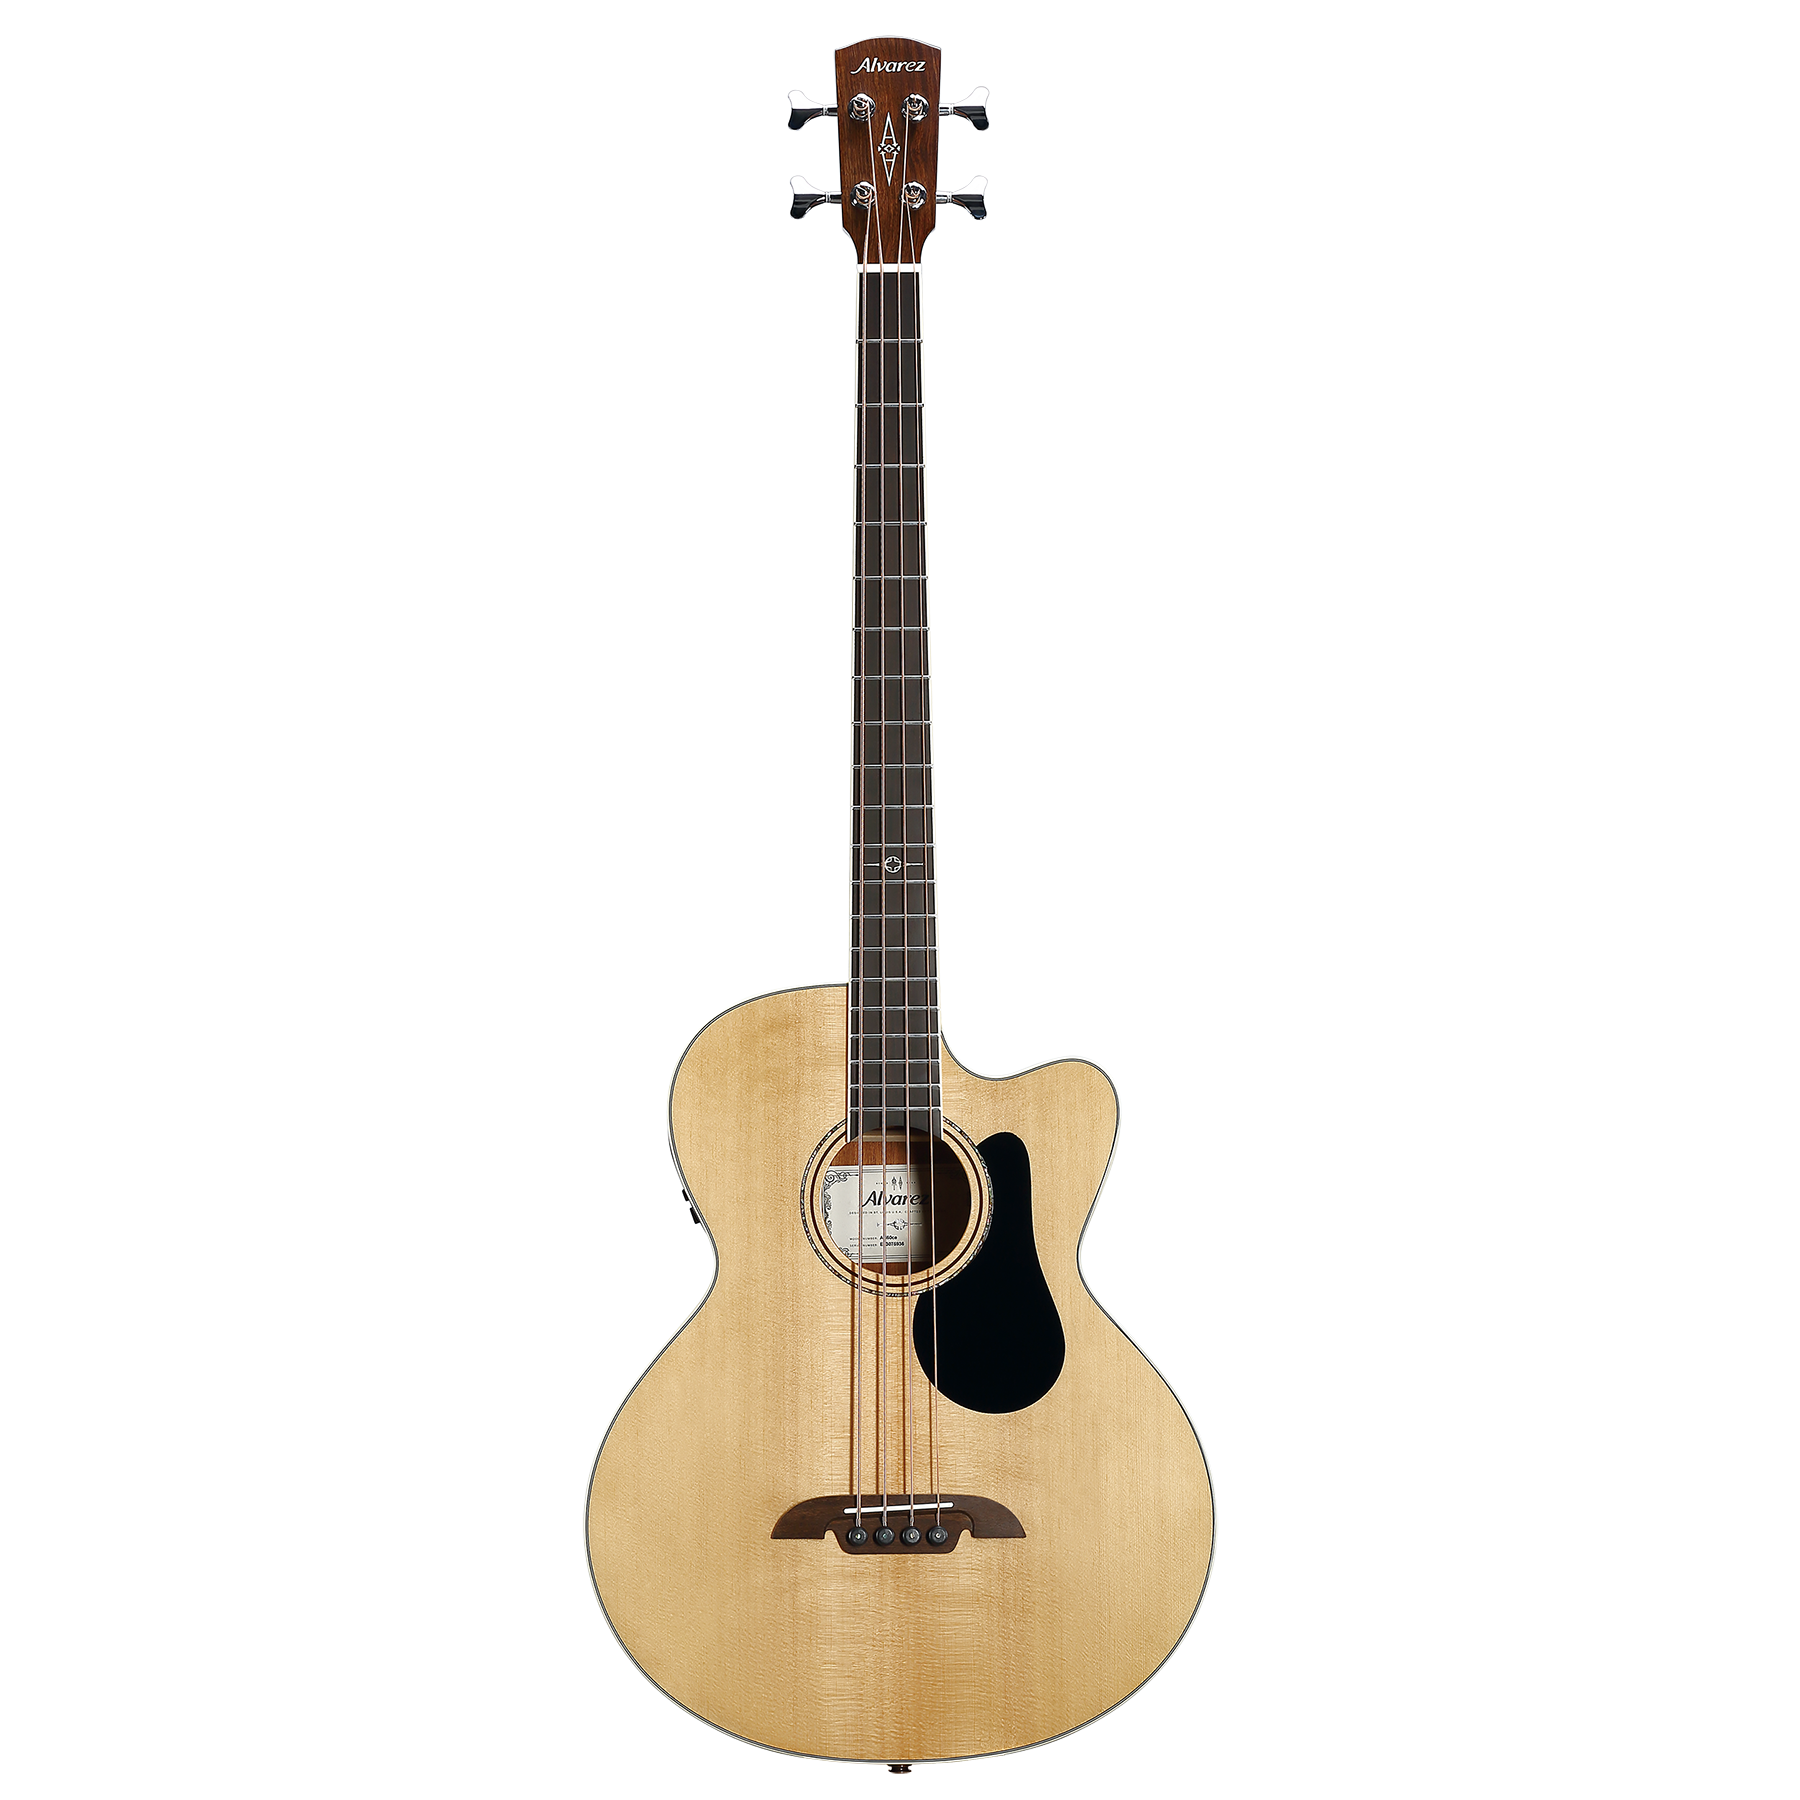 Alvarez - AB60ce Acoustic-electric Bass Guitar - Natural